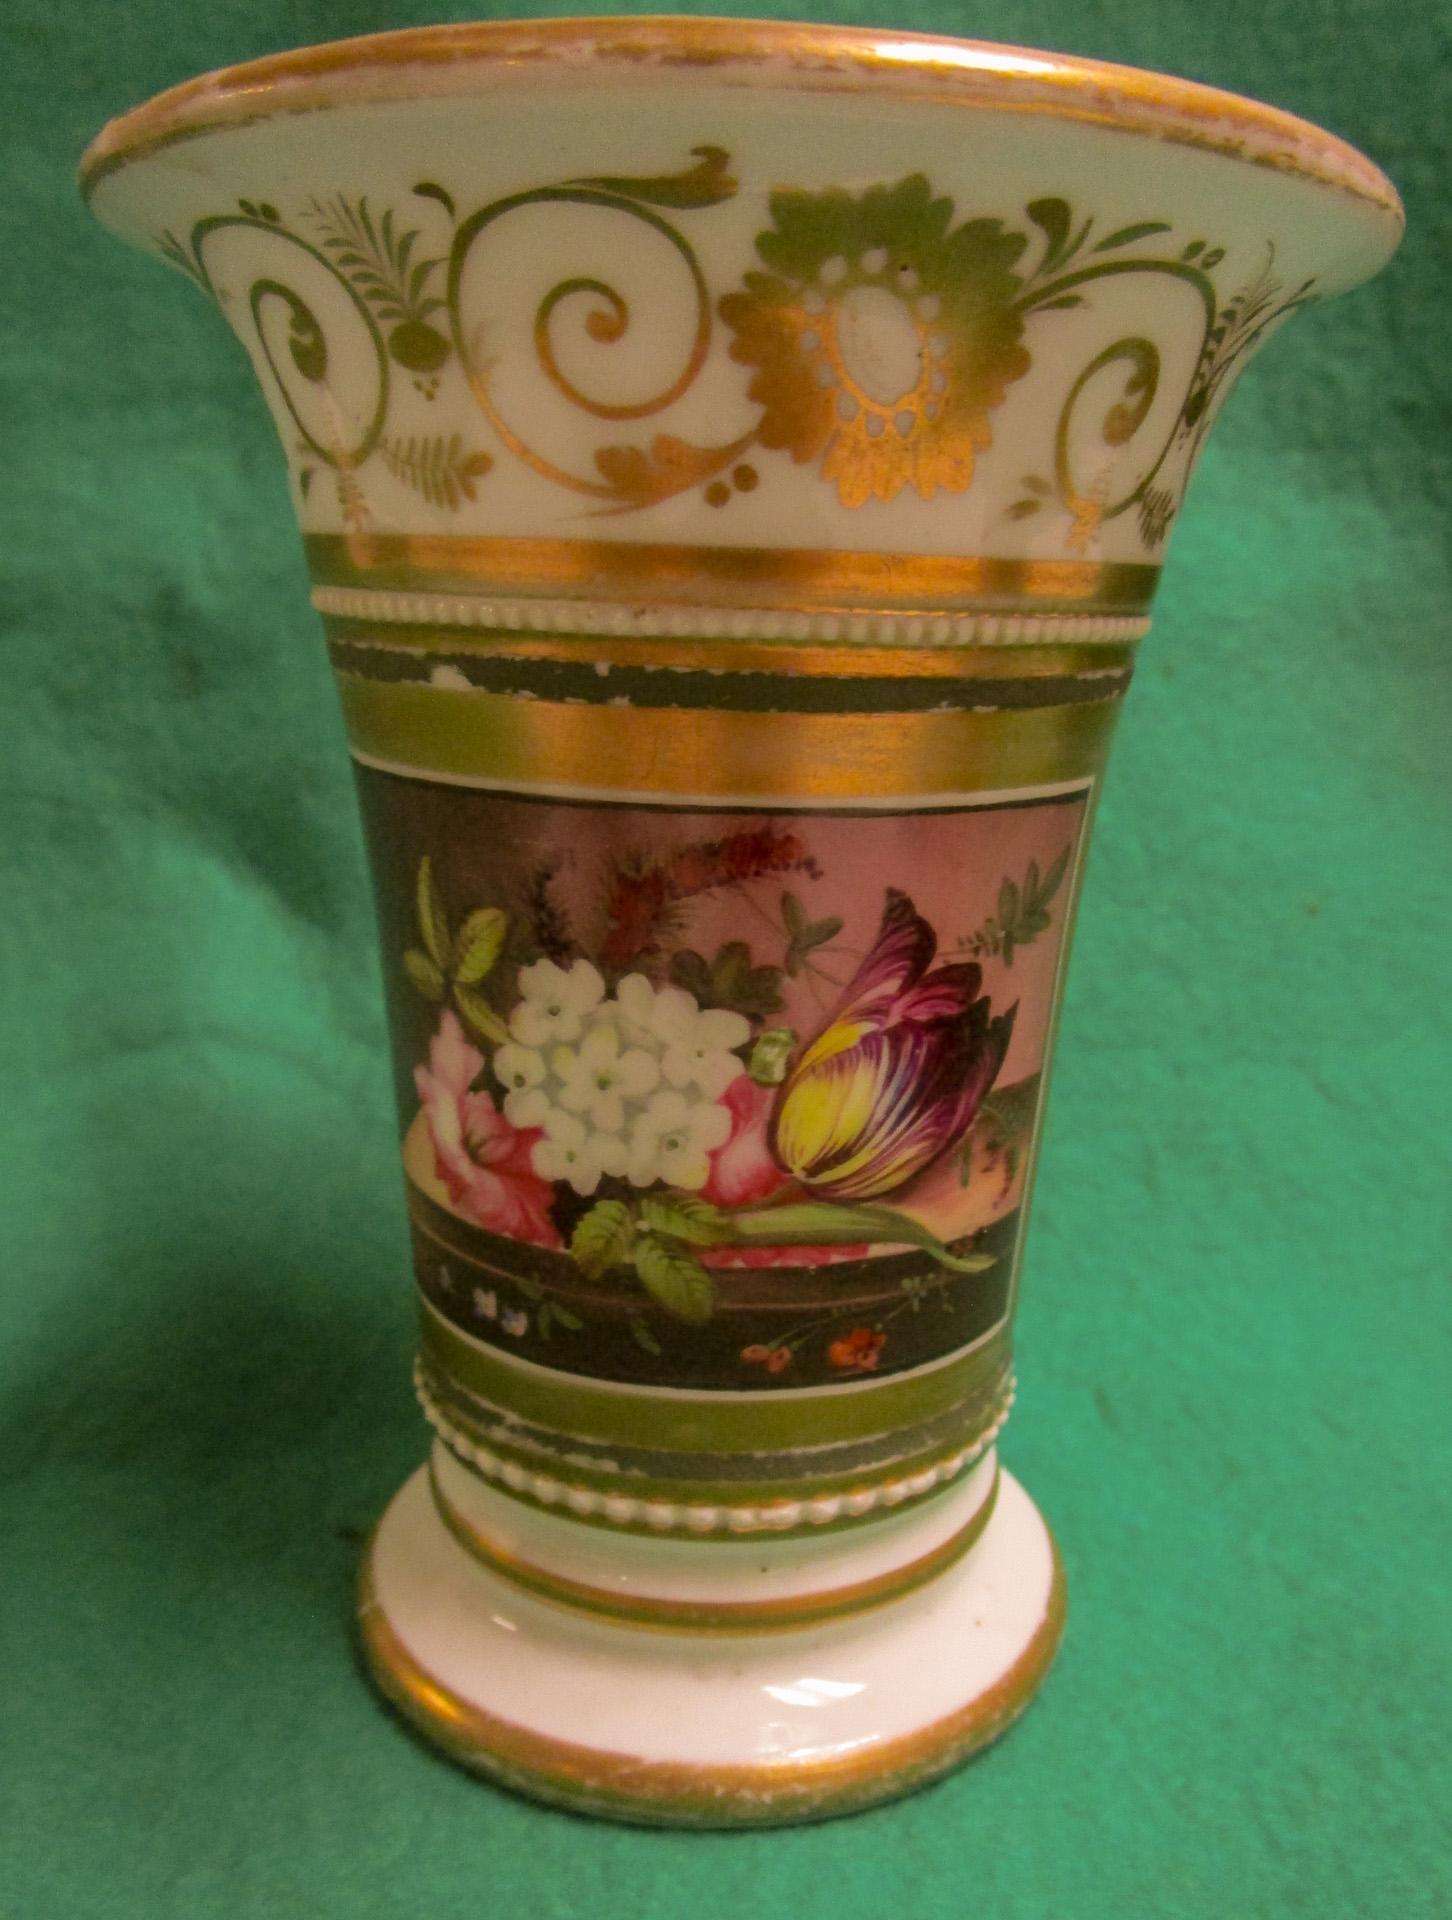 Dieses exquisite, zierliche Paar handbemalter Überlaufvasen aus altem Pariser Porzellan aus der Regency-Periode zeigt zwei getrennte Displays mit zarten Blumen. Eine davon zeigt Frühlings-Nelken, eine rosa Rose, blaue Akelei, Glockenblumen und